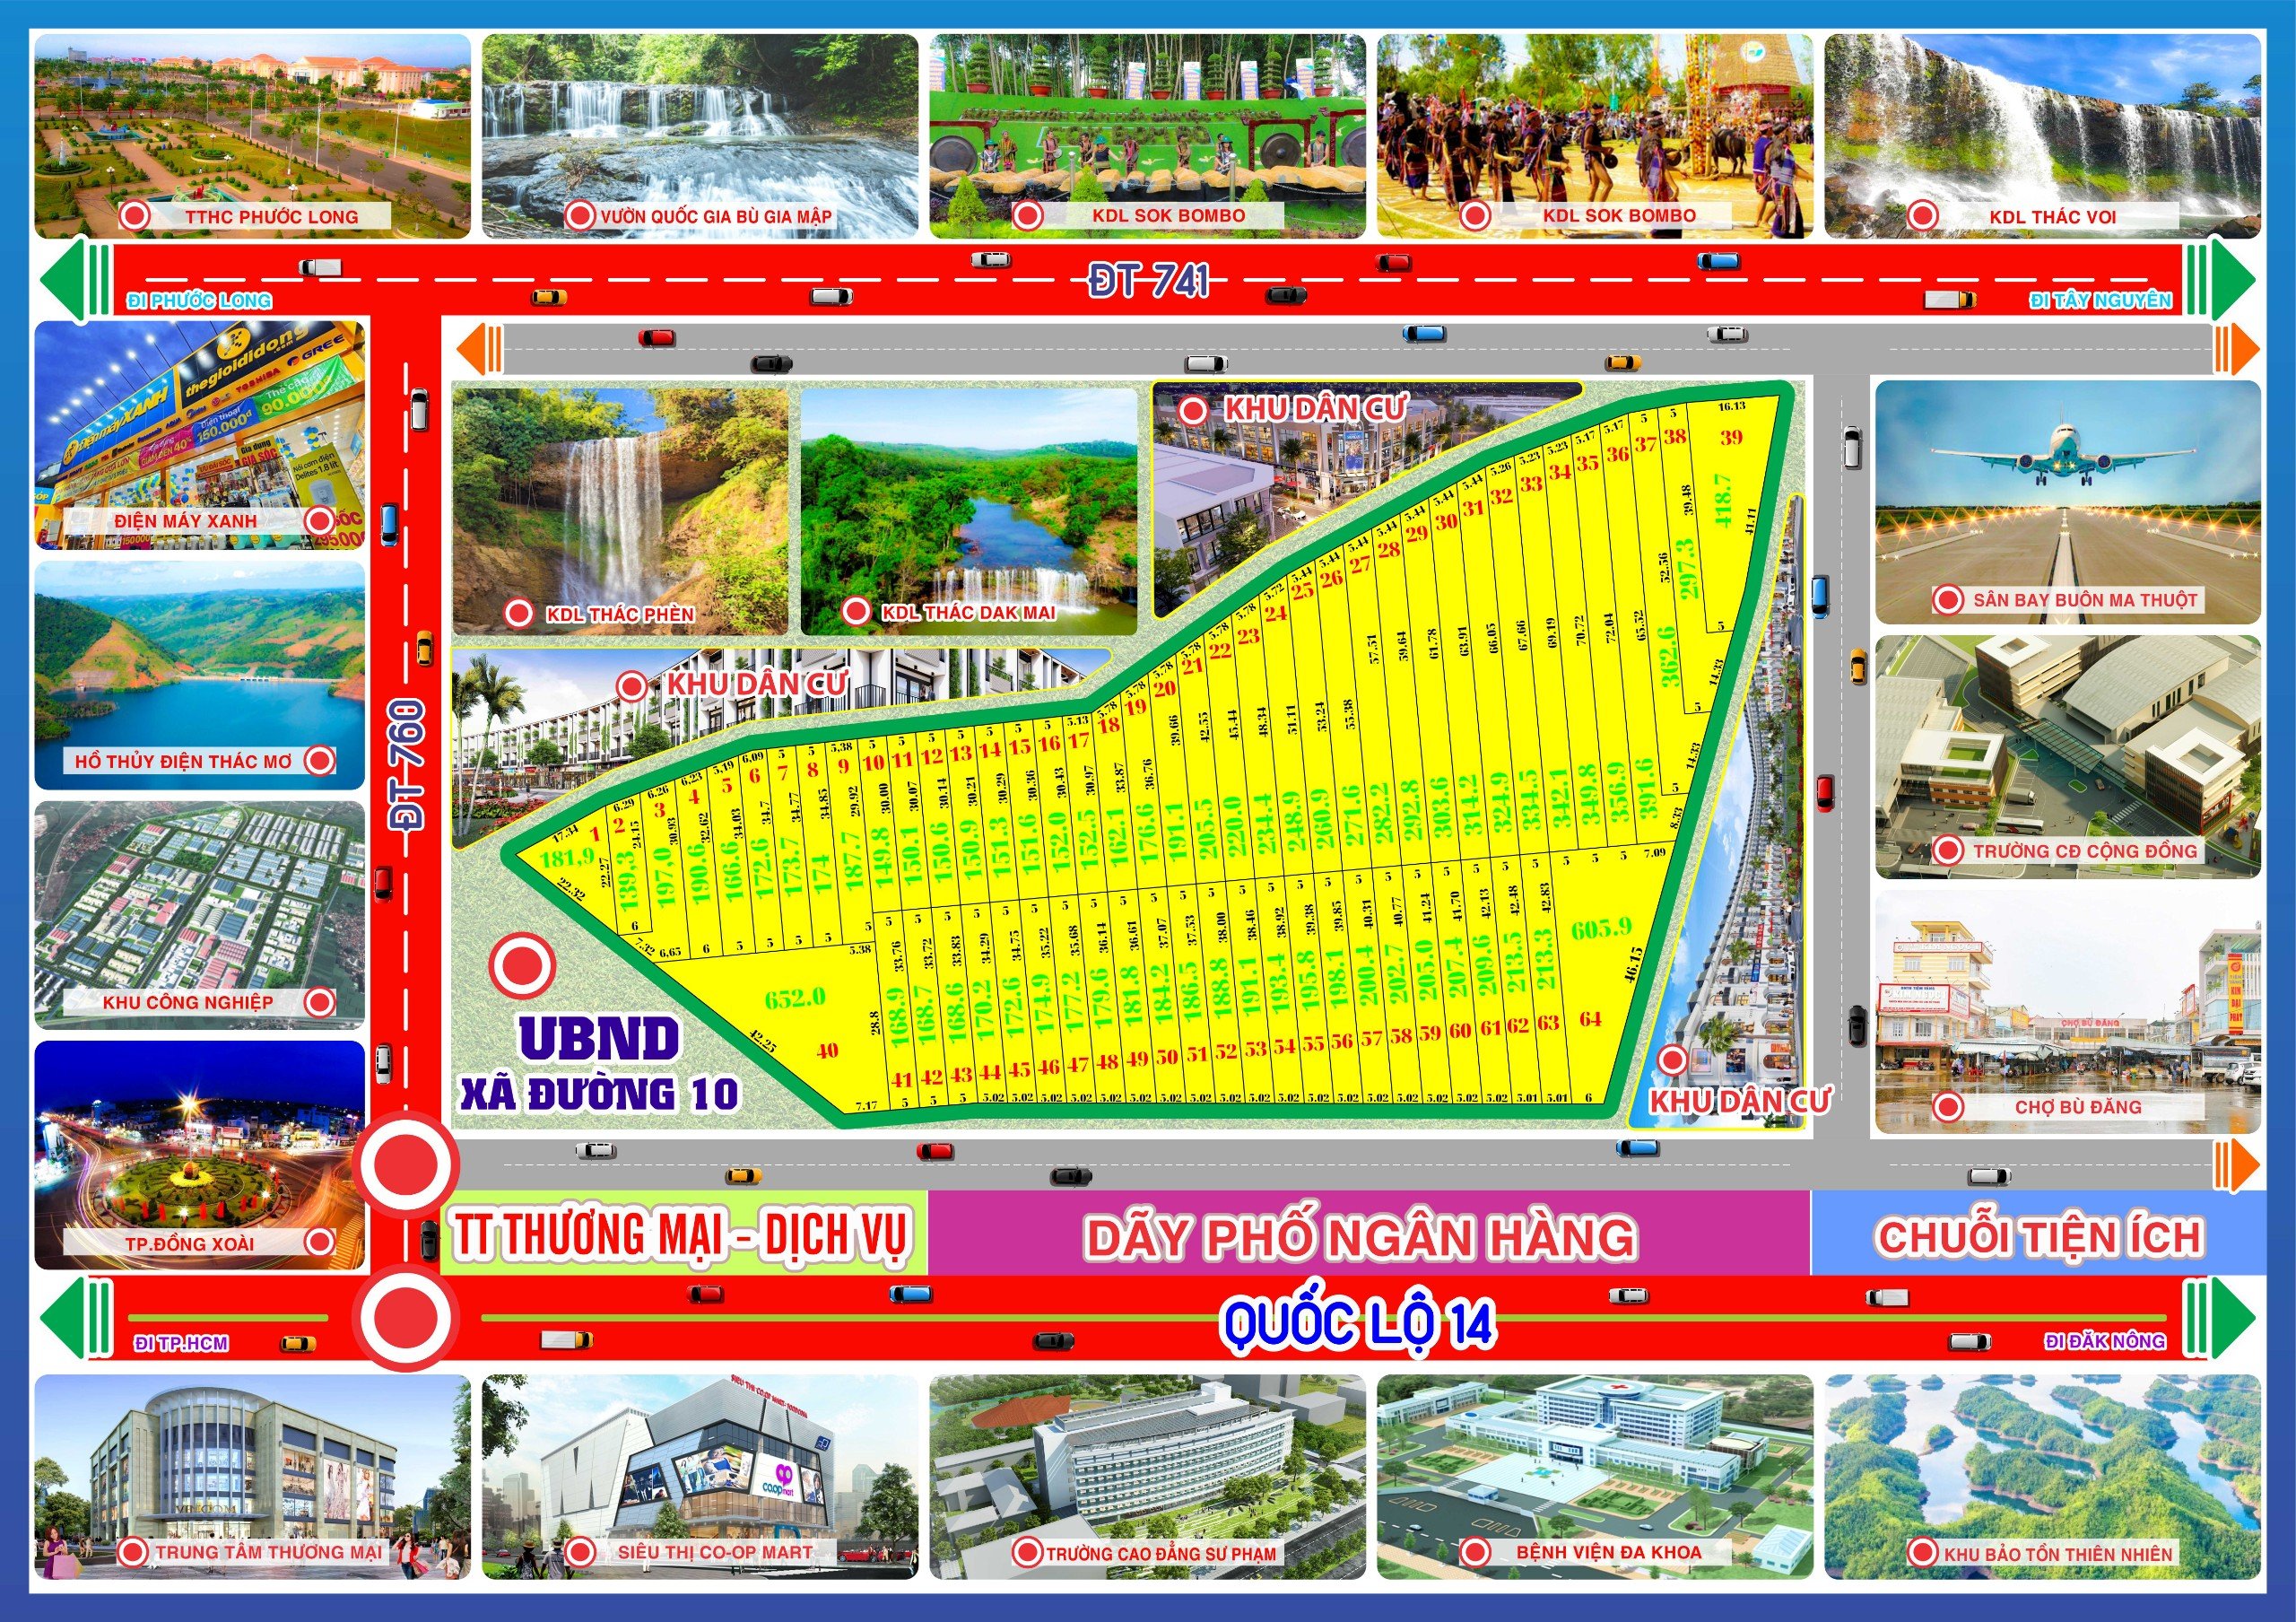 Cần bán Đất đường ĐT 760, Xã Đường 10, Diện tích 168m², Giá 5 Triệu/m² 4